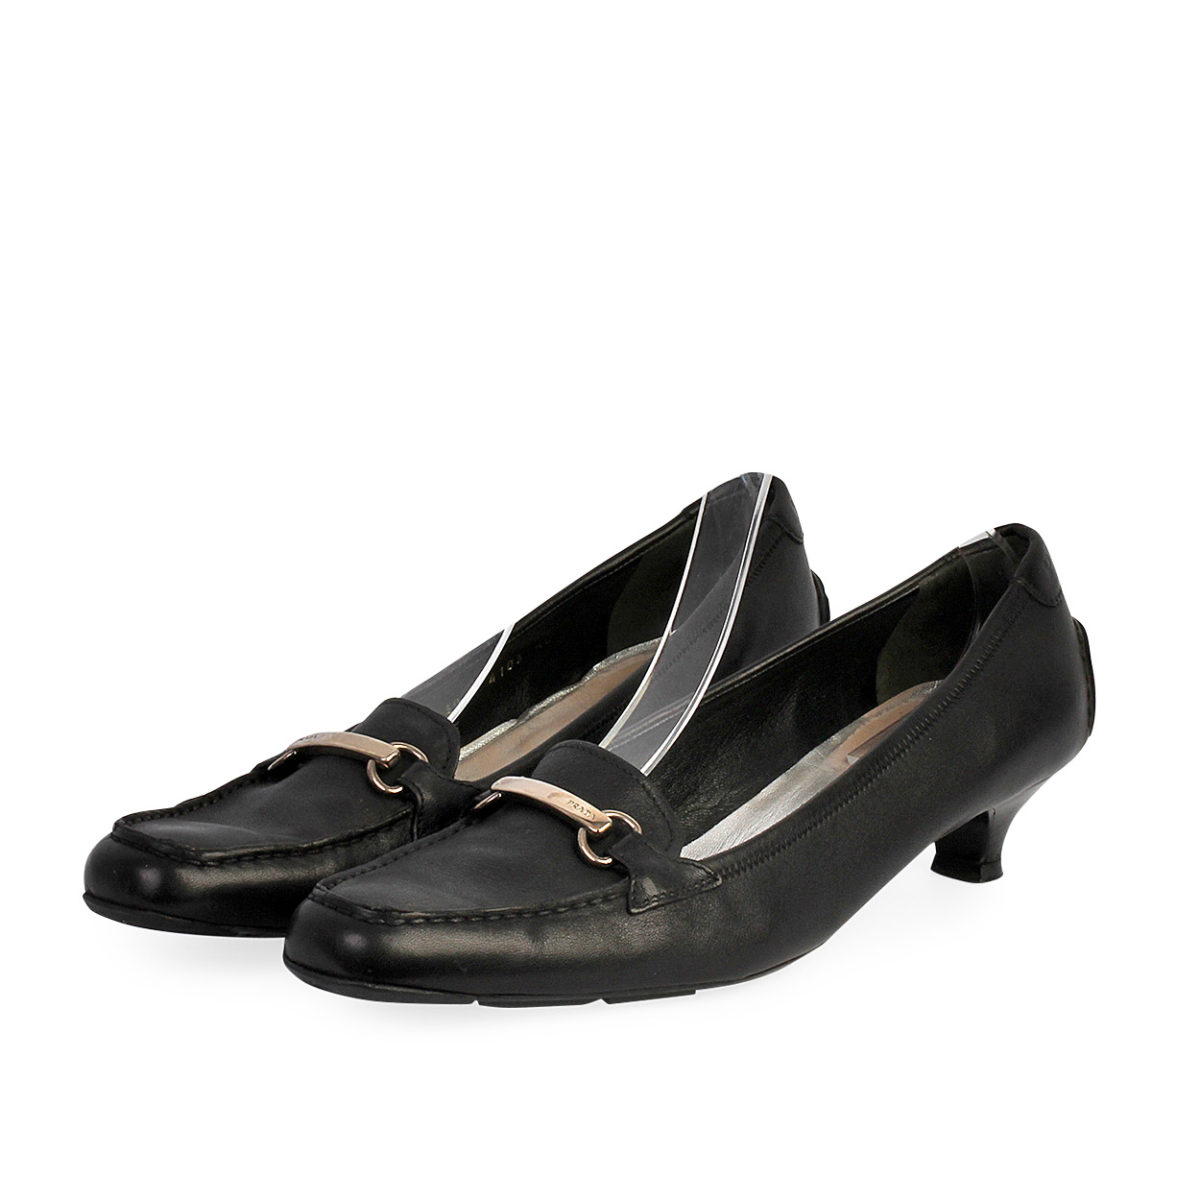 black leather kitten heels